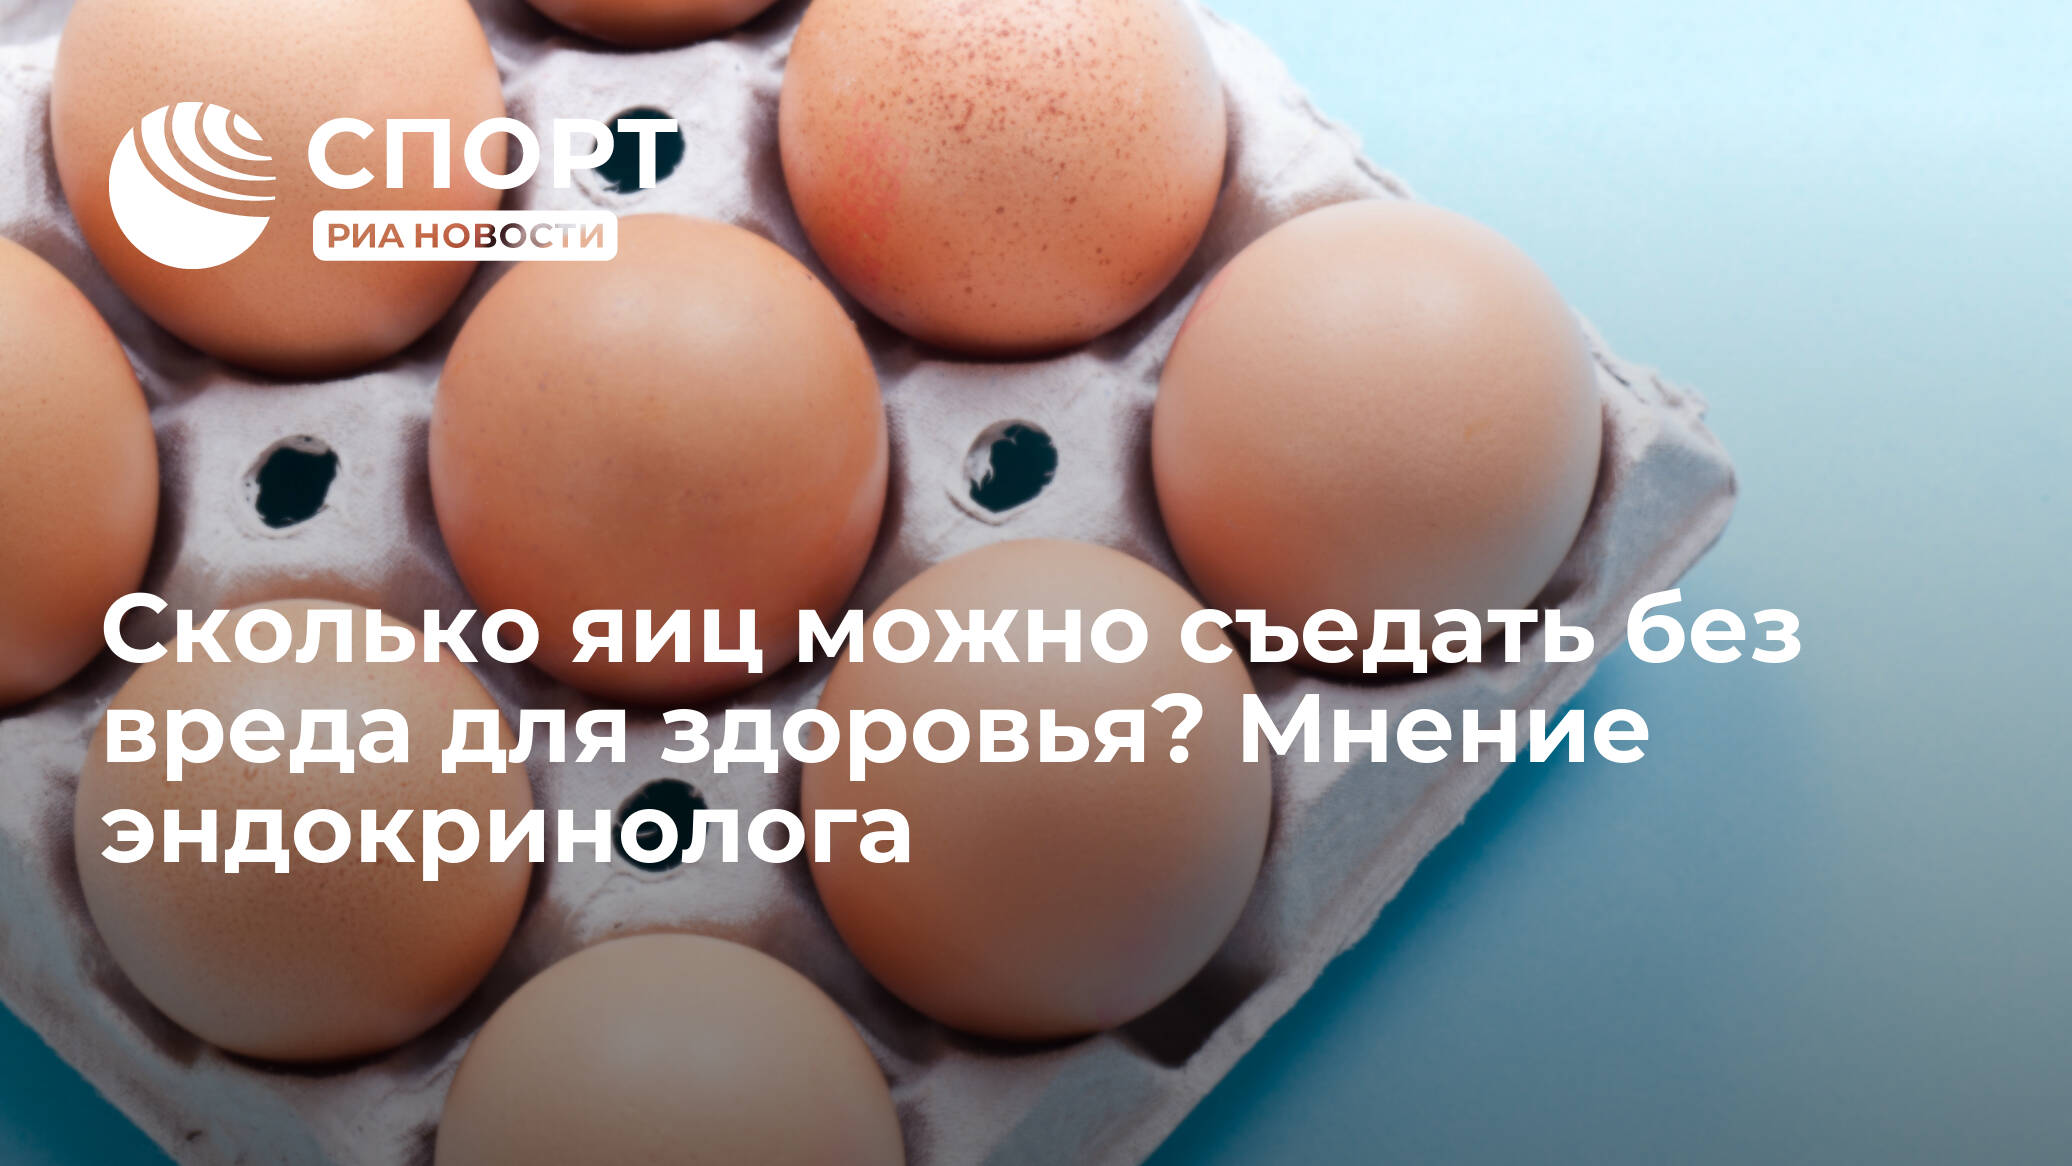 Калорийность вареного яйца 1шт: сколько же калорий в яйце взависимости от способа приготовления